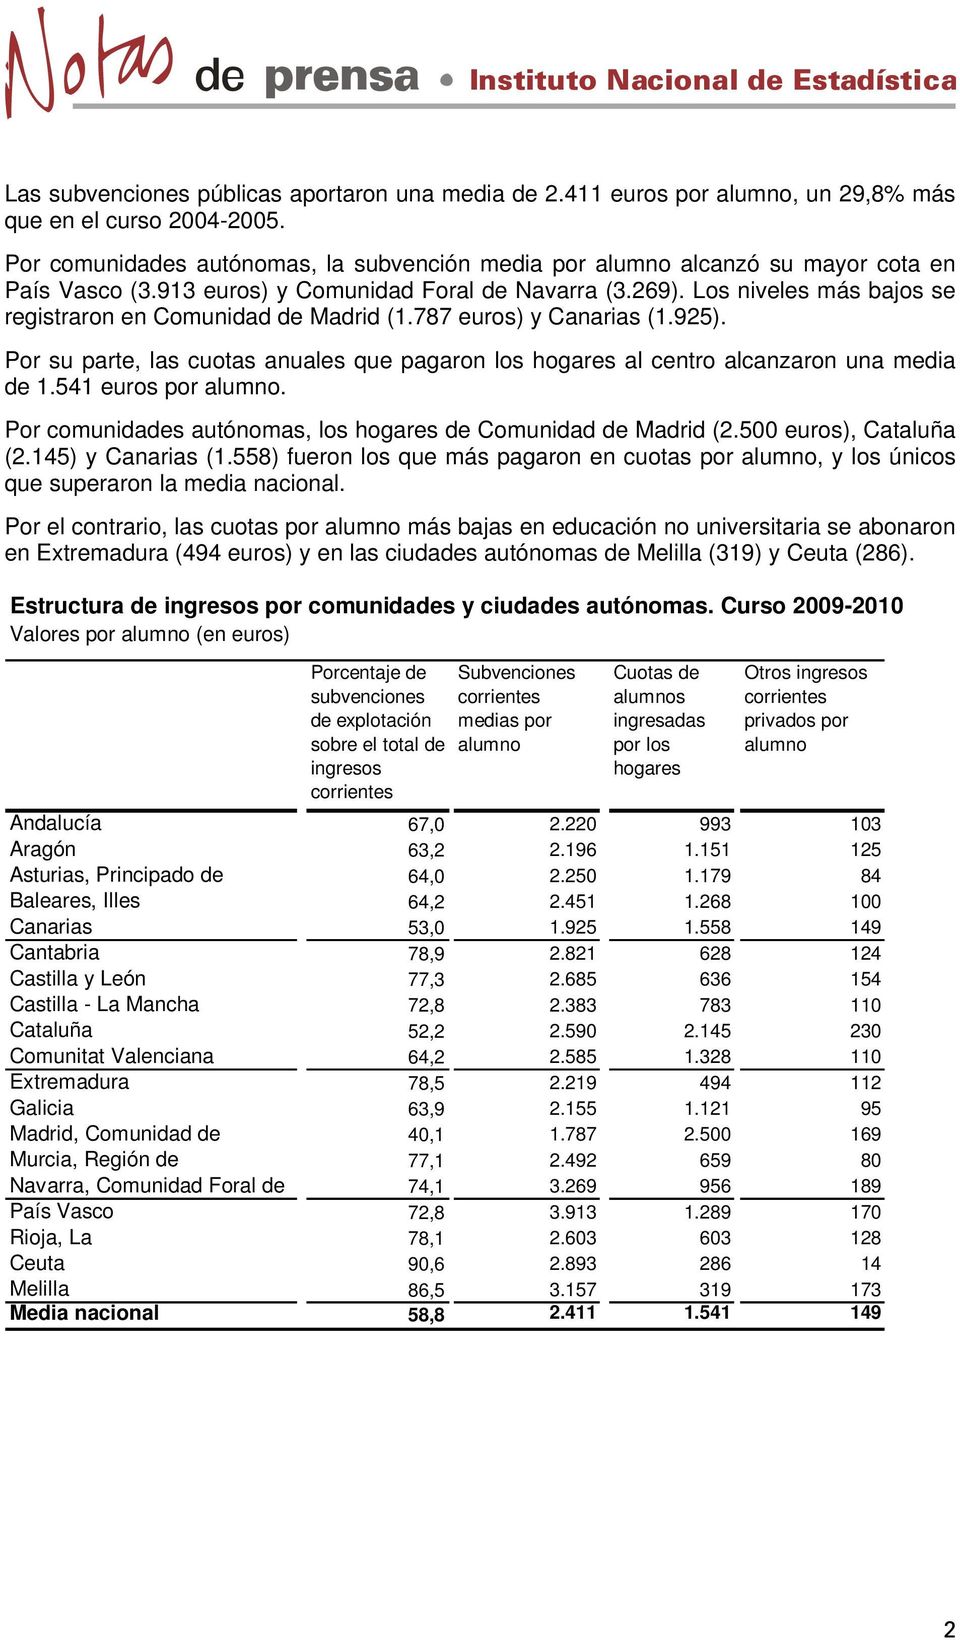 Los niveles más bajos se registraron en Comunidad de Madrid (1.787 euros) y Canarias (1.925). Por su parte, las cuotas anuales que pagaron los hogares al centro alcanzaron una media de 1.